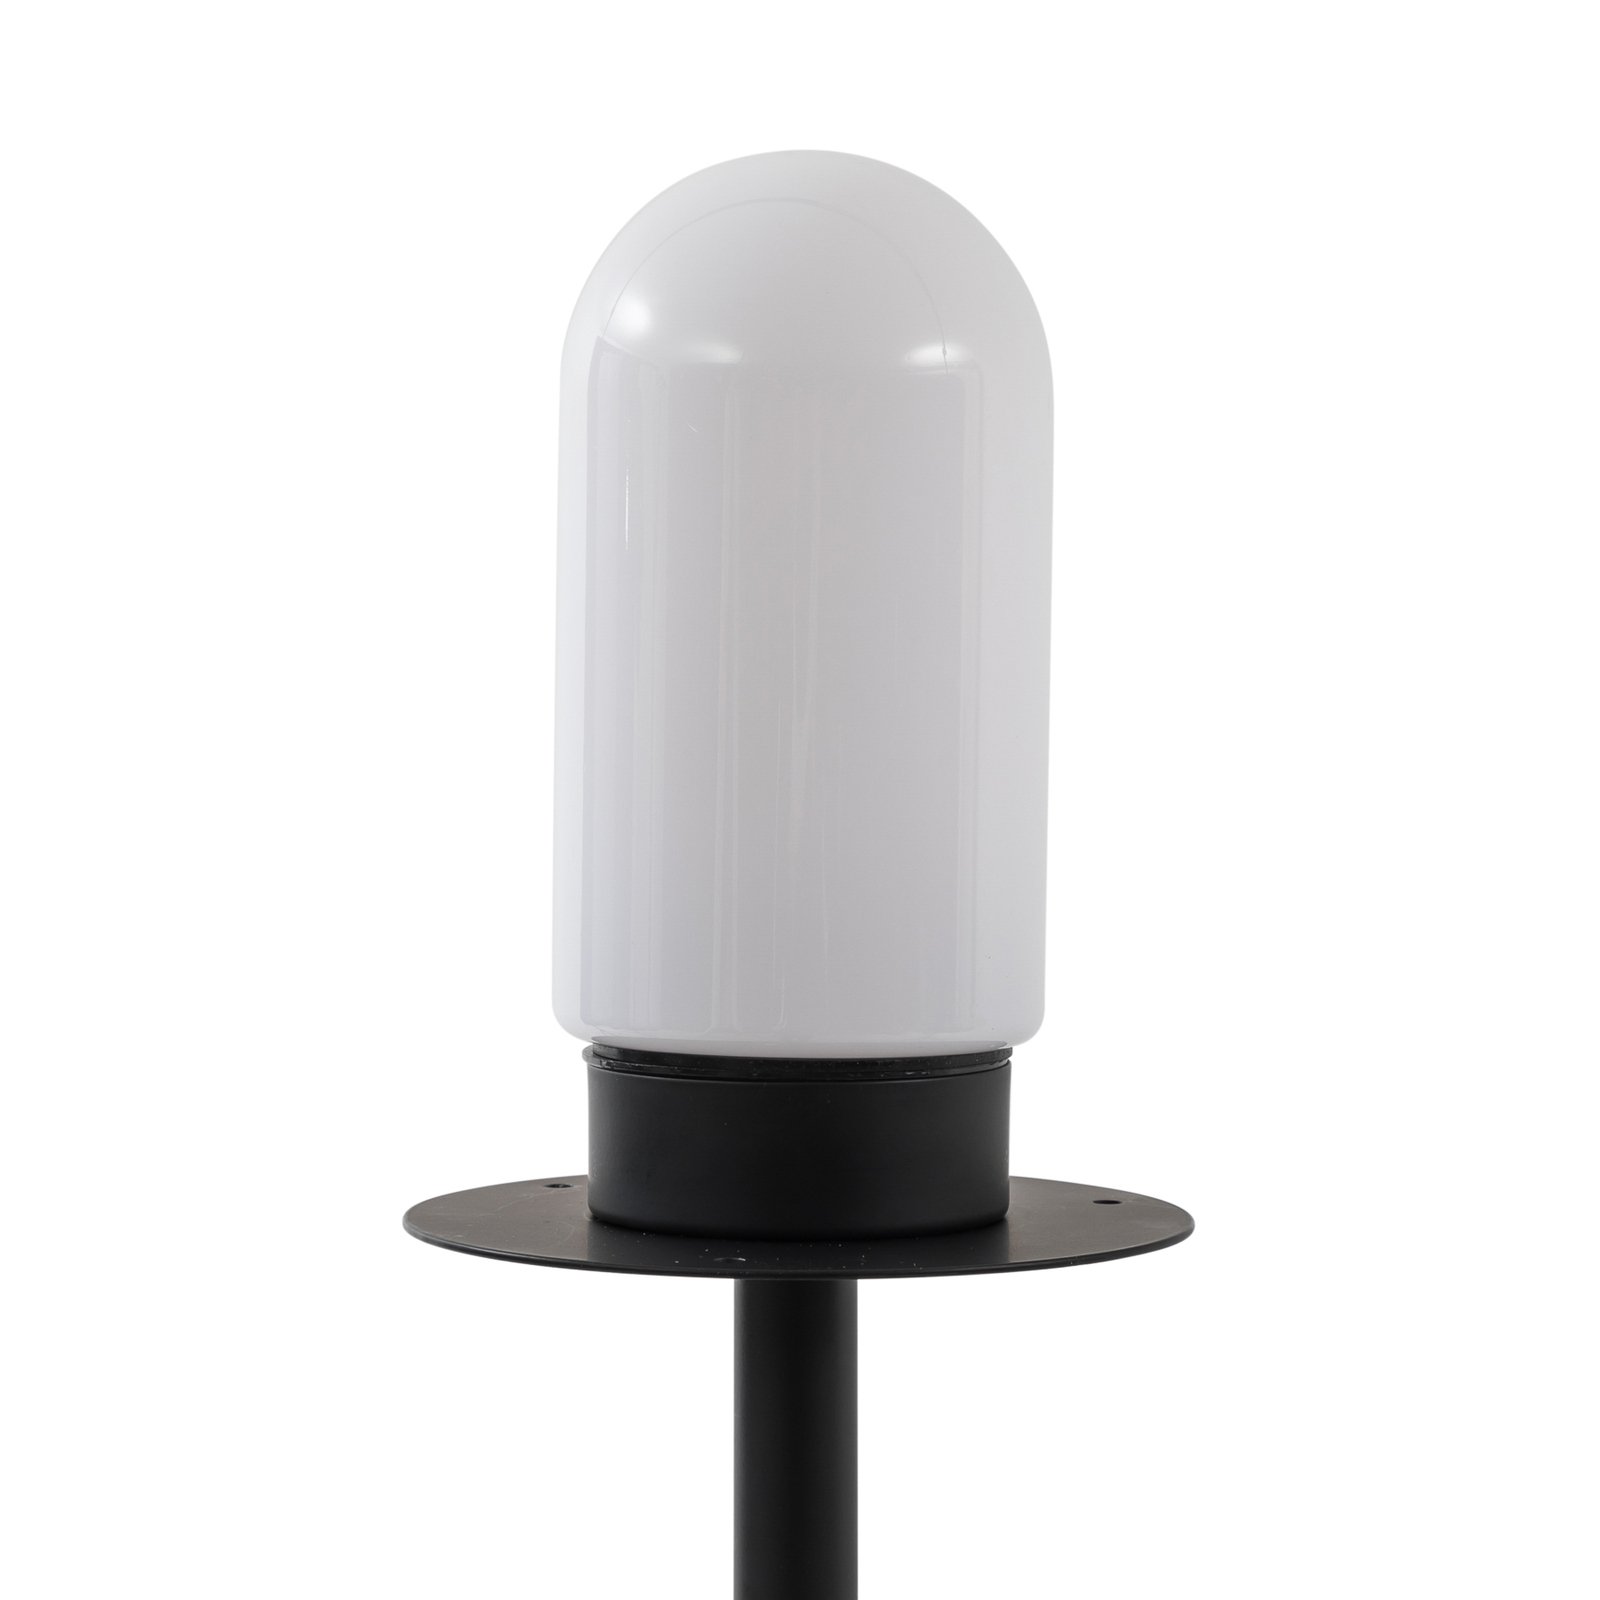 Lucande luminaire de terrasse Solvindor, kaki, plastique IP44